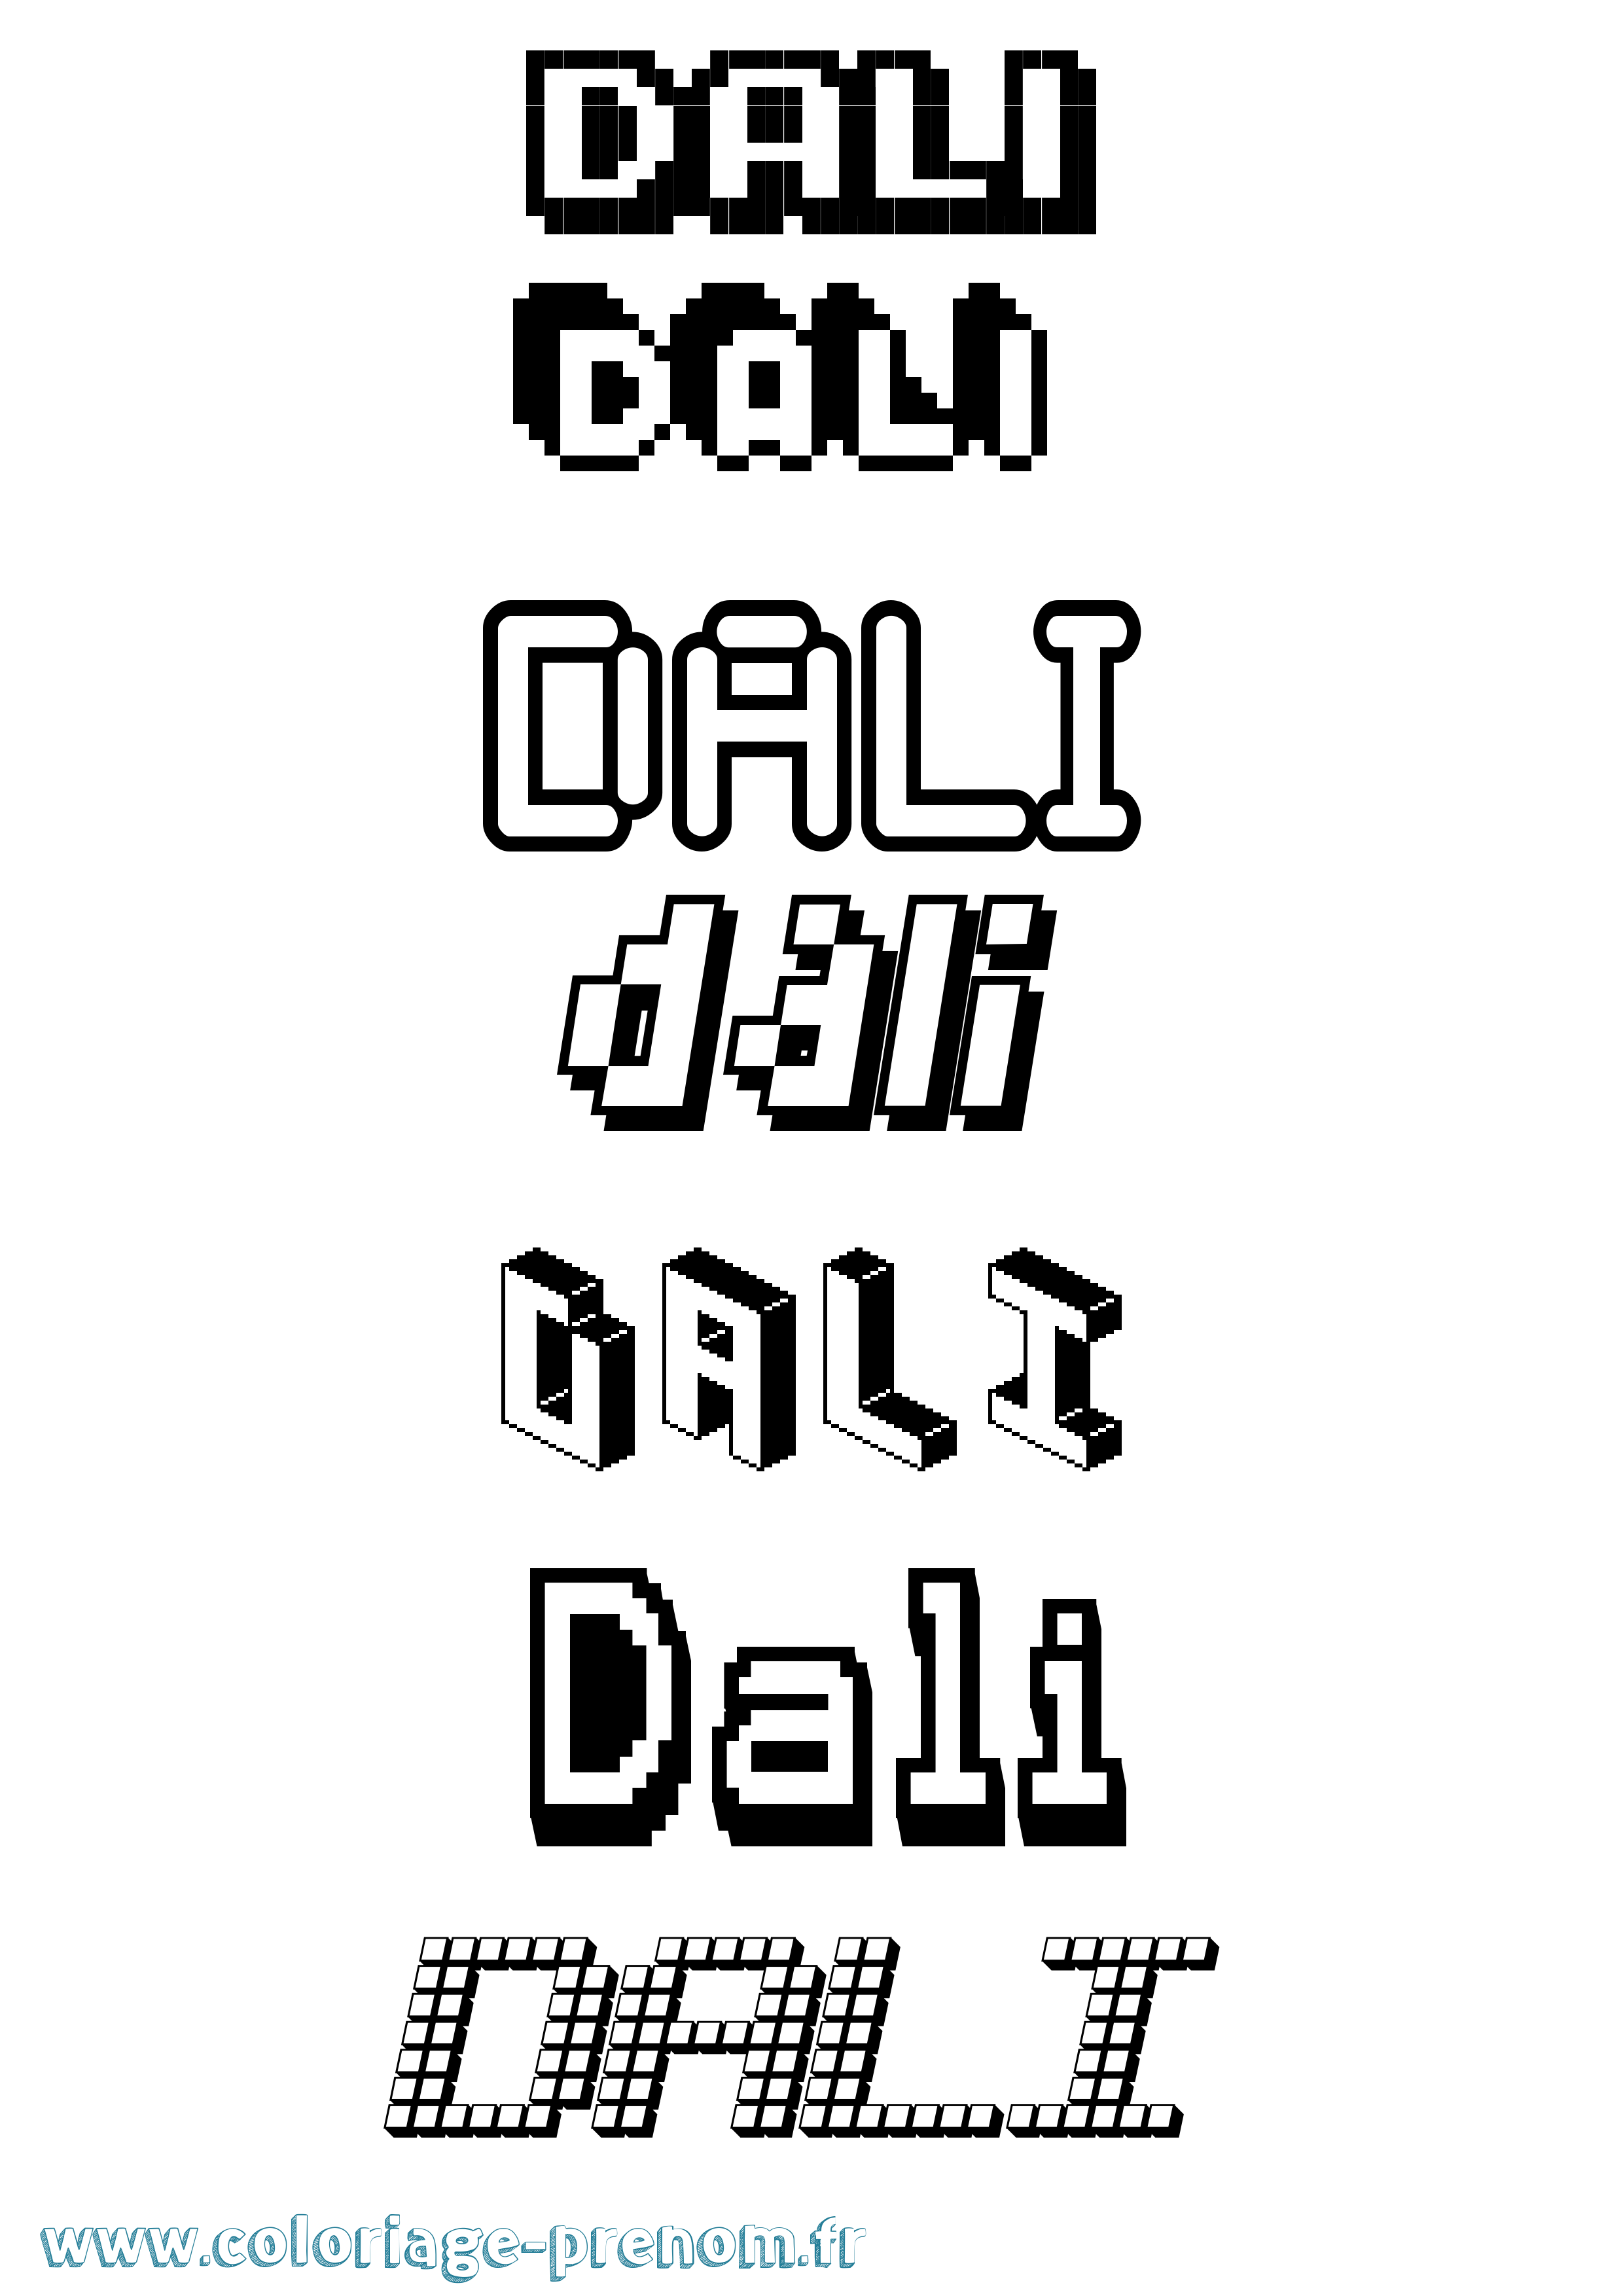 Coloriage prénom Dali Pixel